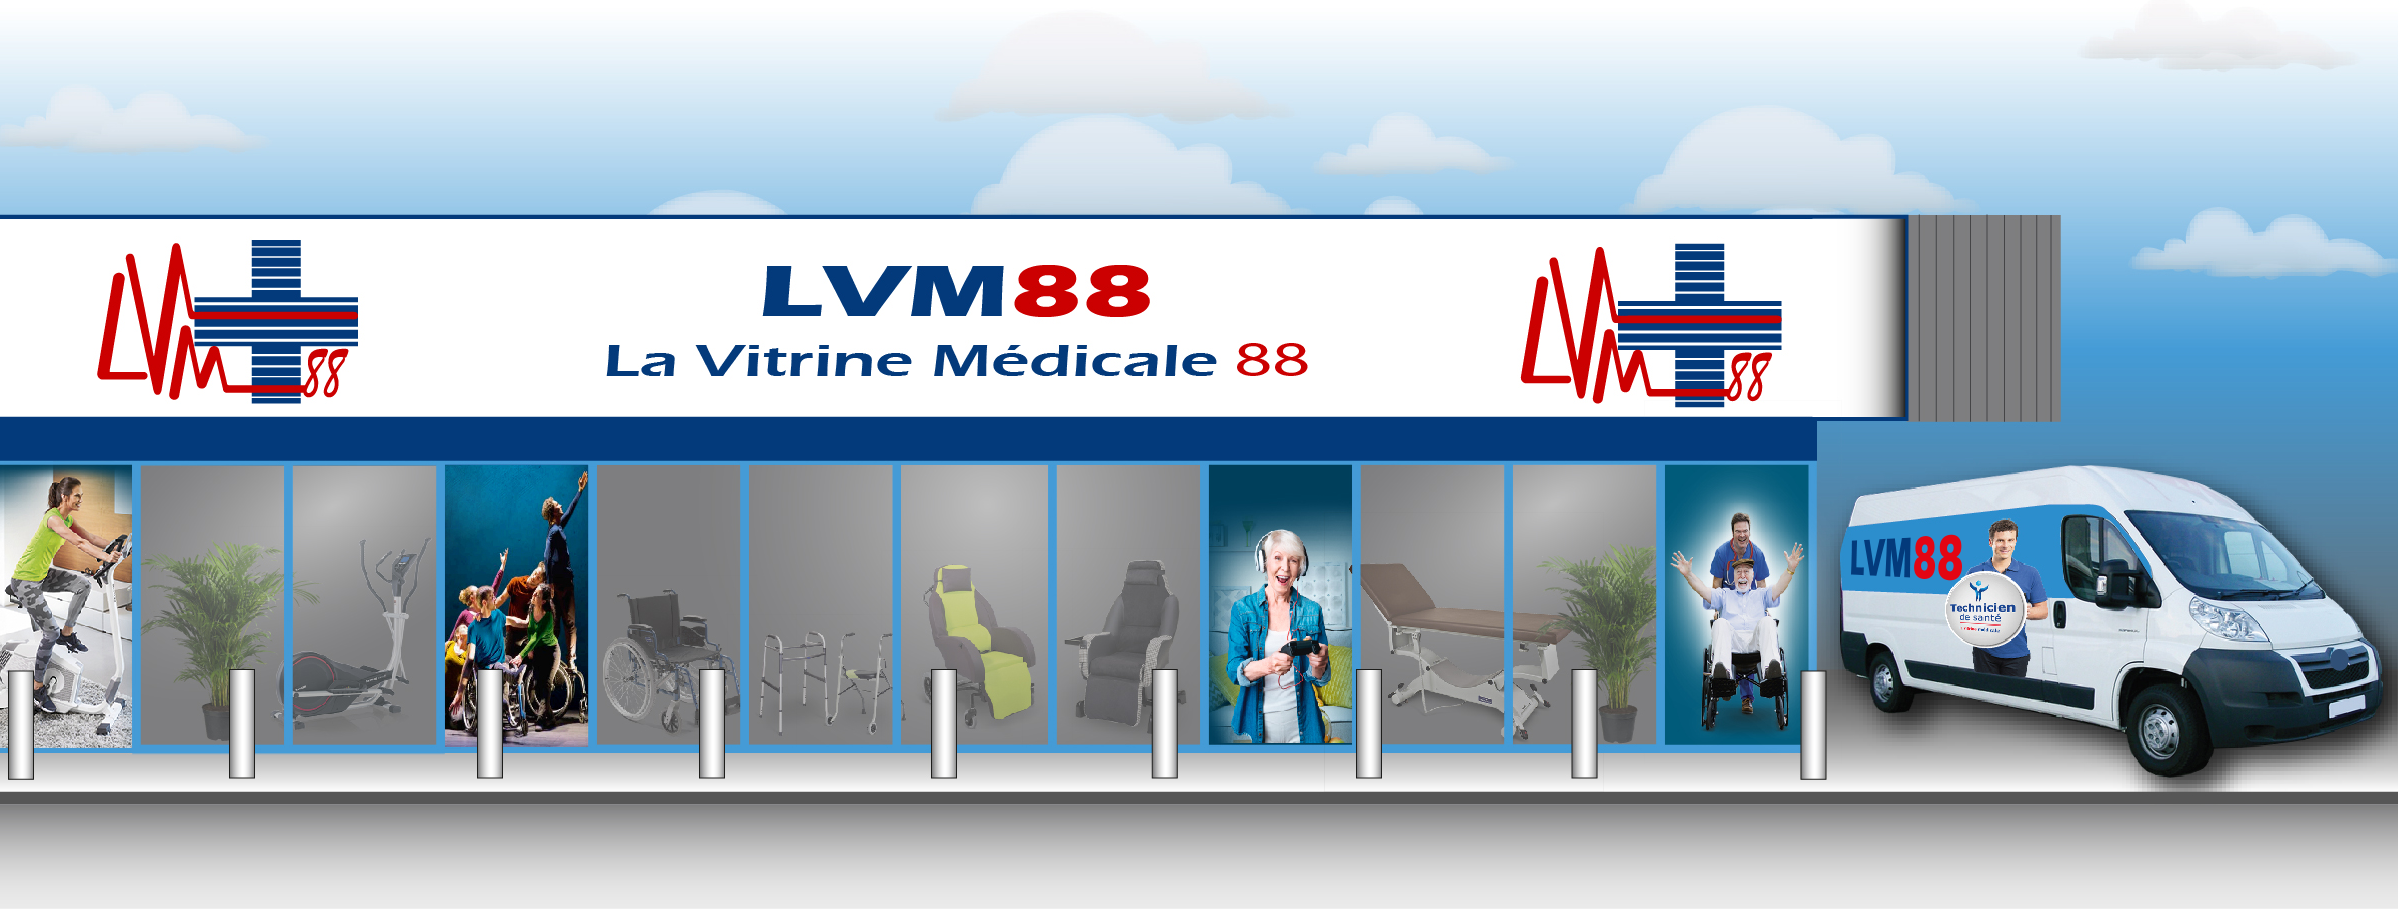 LVM88 magasin